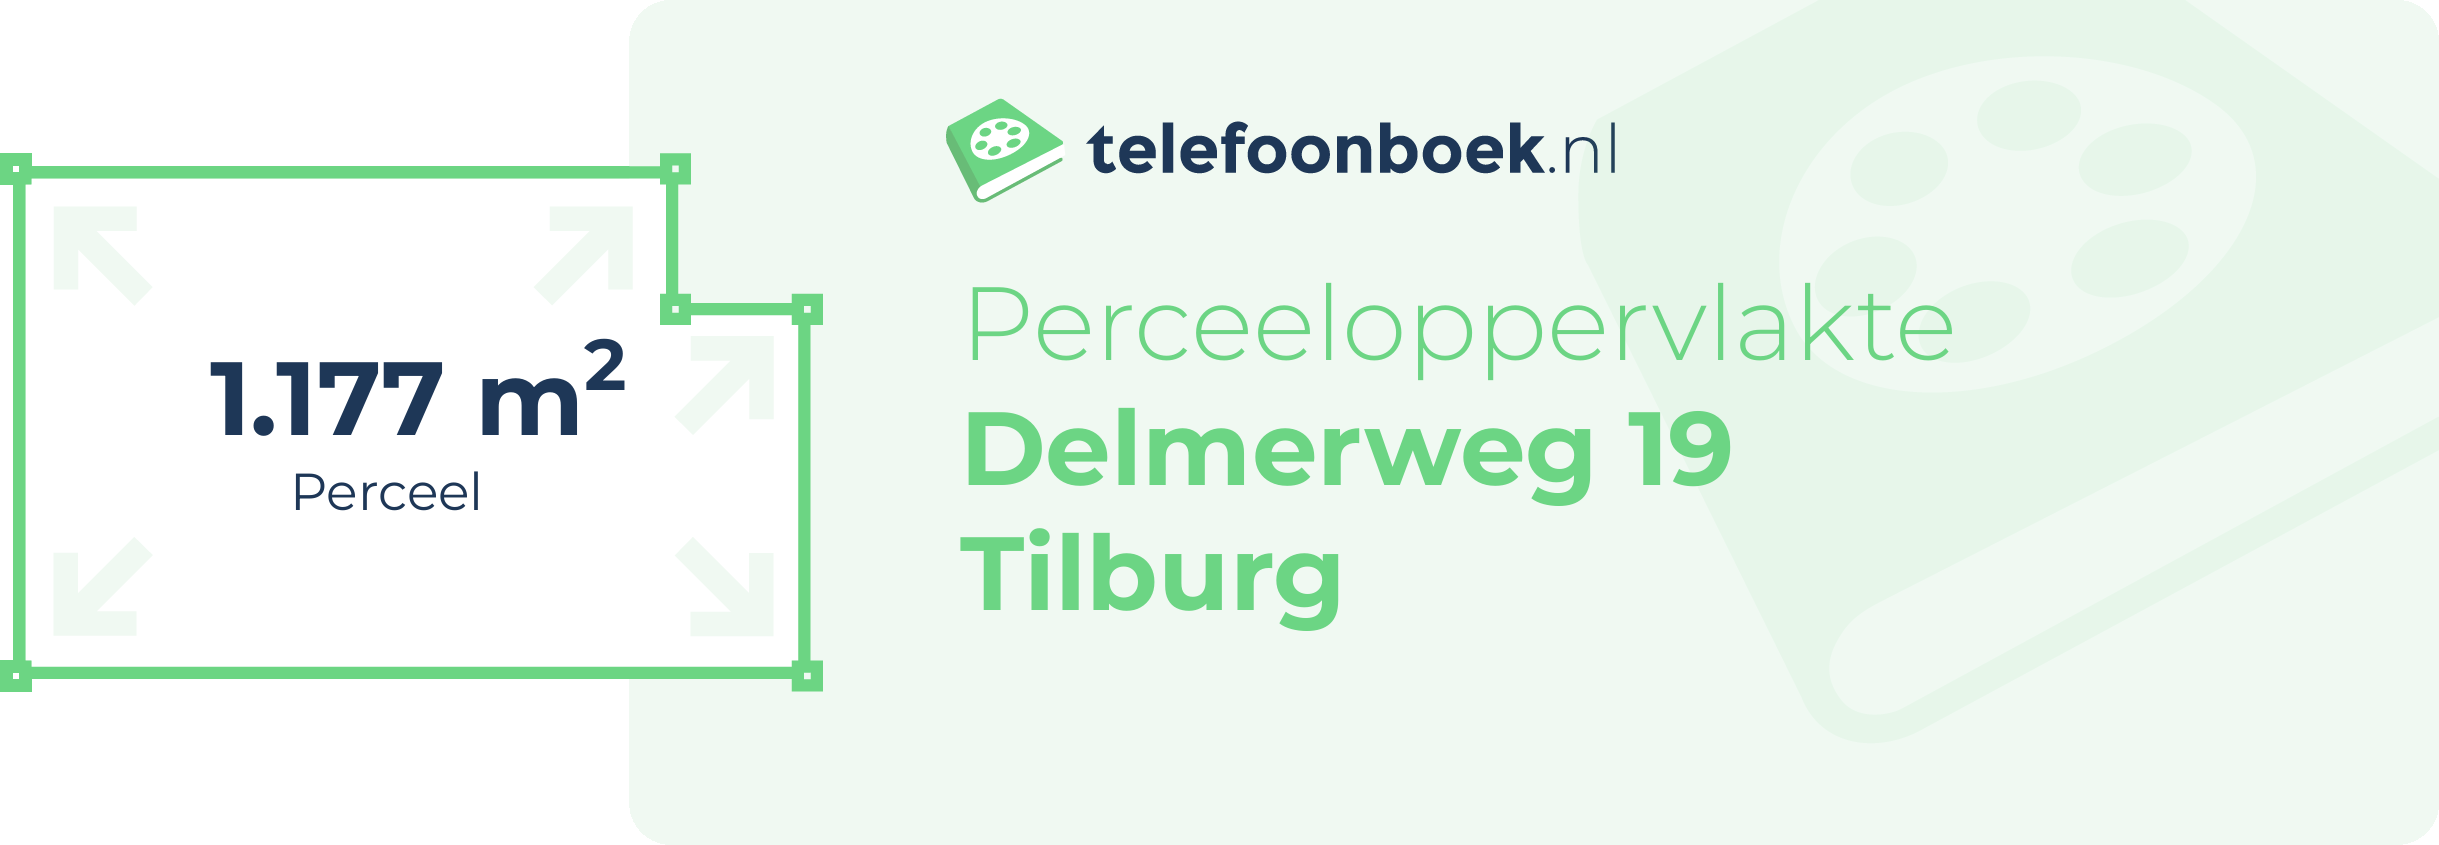 Perceeloppervlakte Delmerweg 19 Tilburg